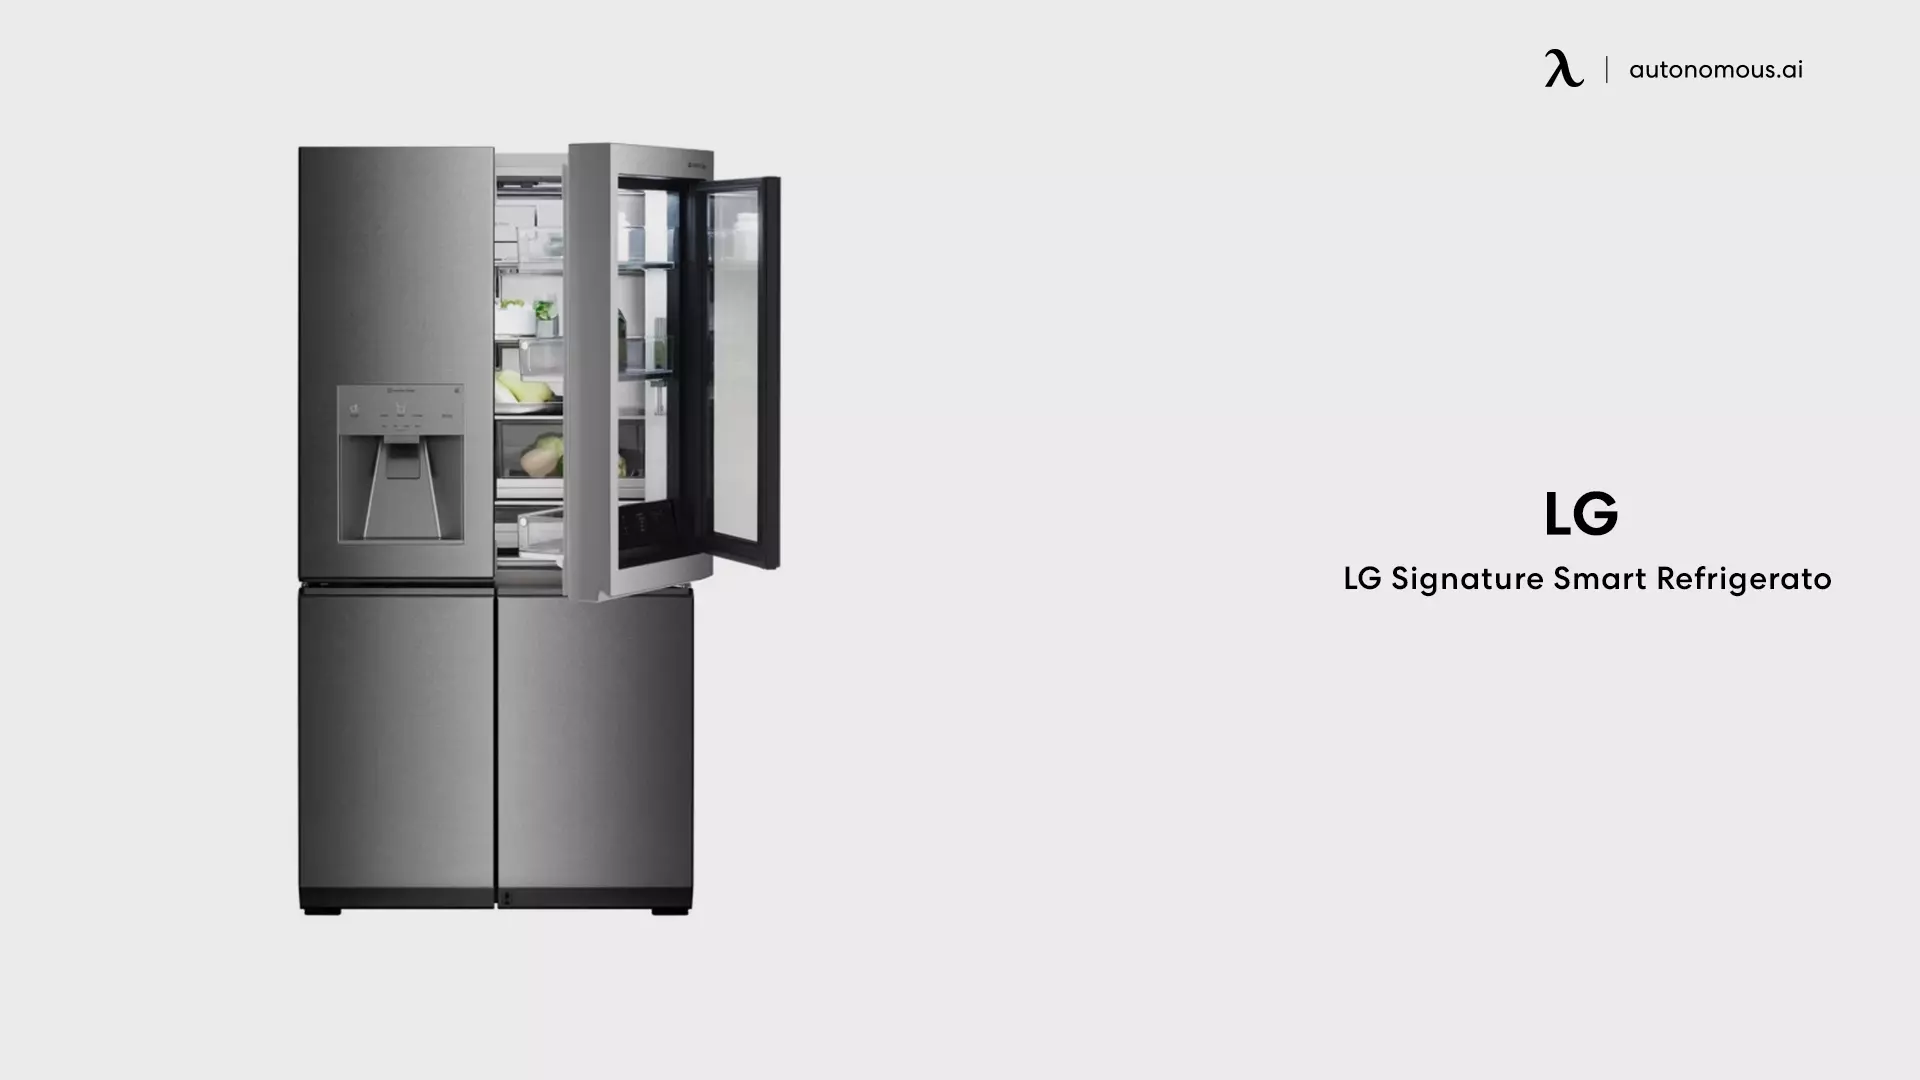 LG Signature Smart Refrigerator